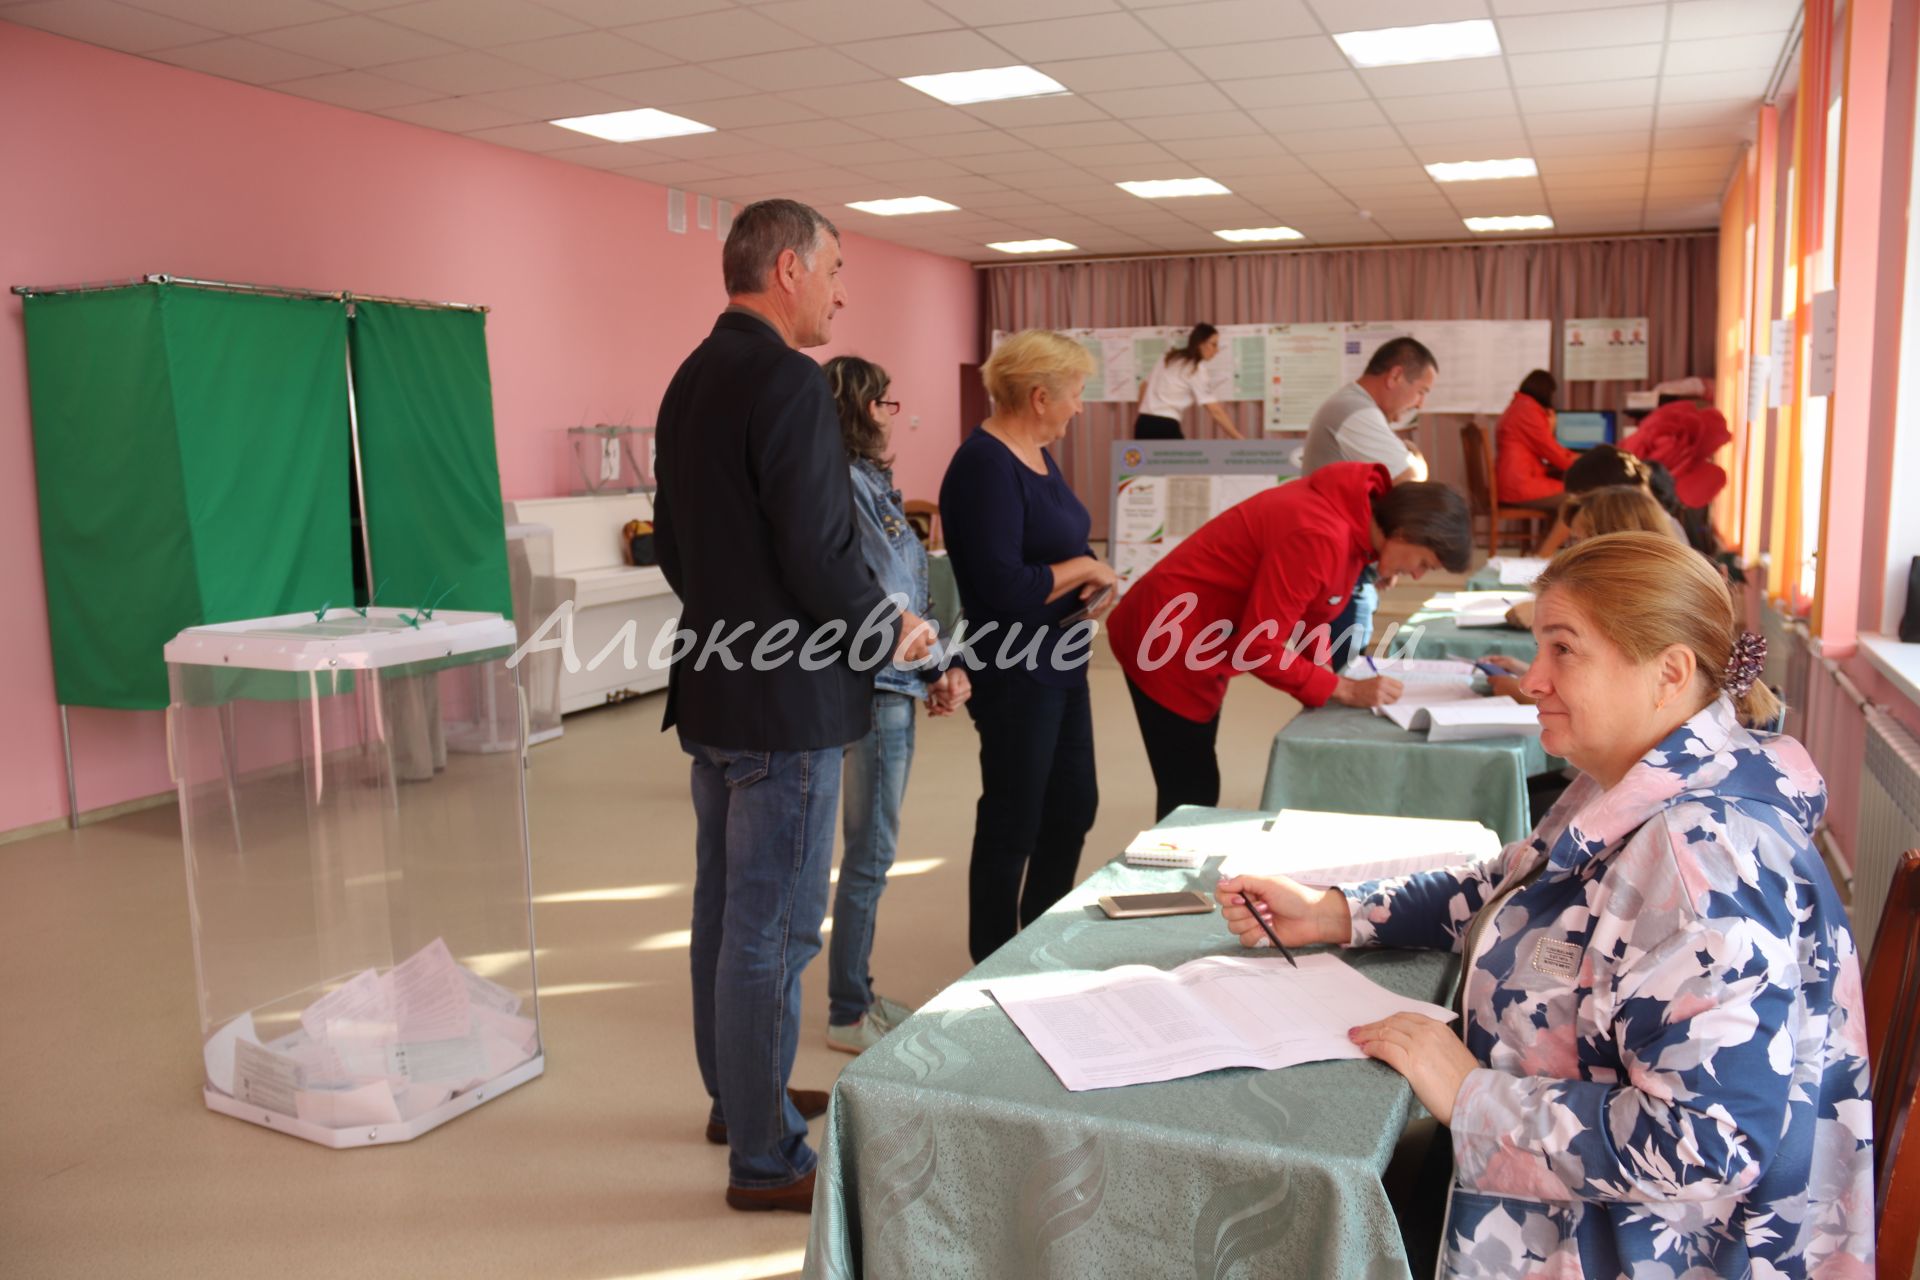 В Алькеевском районе в 7.00 открылись избирательные участки по выборам депутатов Госсовета Татарстана